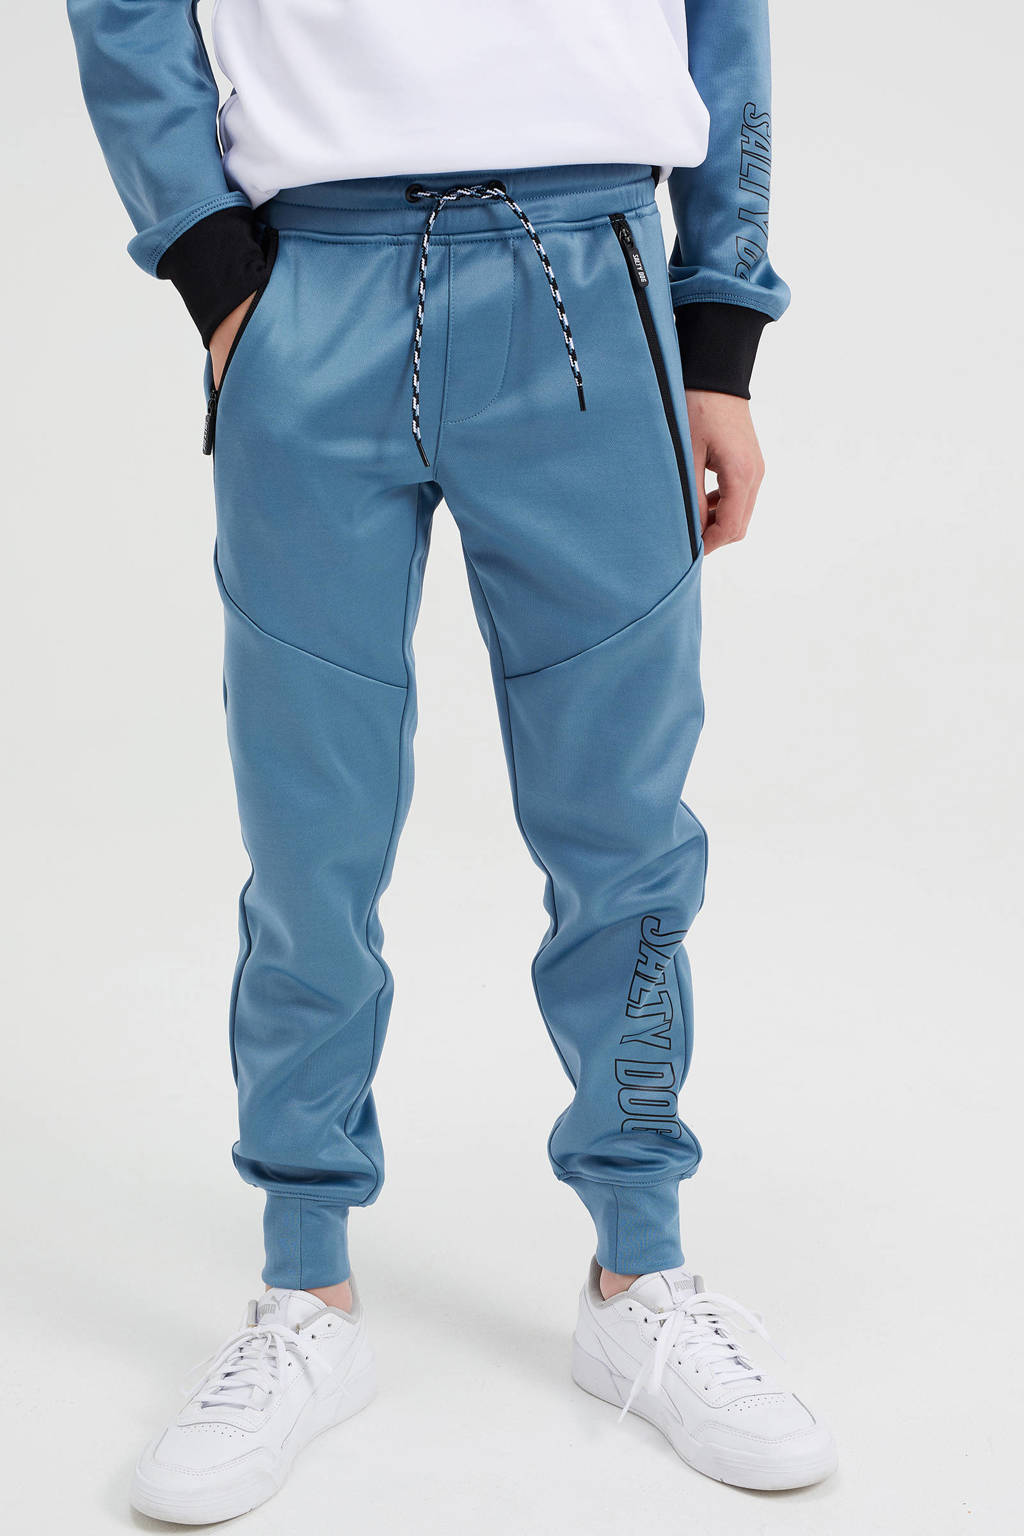 Grijsblauwe jongens WE Fashion Salty Dog slim fit joggingbroek van polyester met regular waist en elastische tailleband met koord